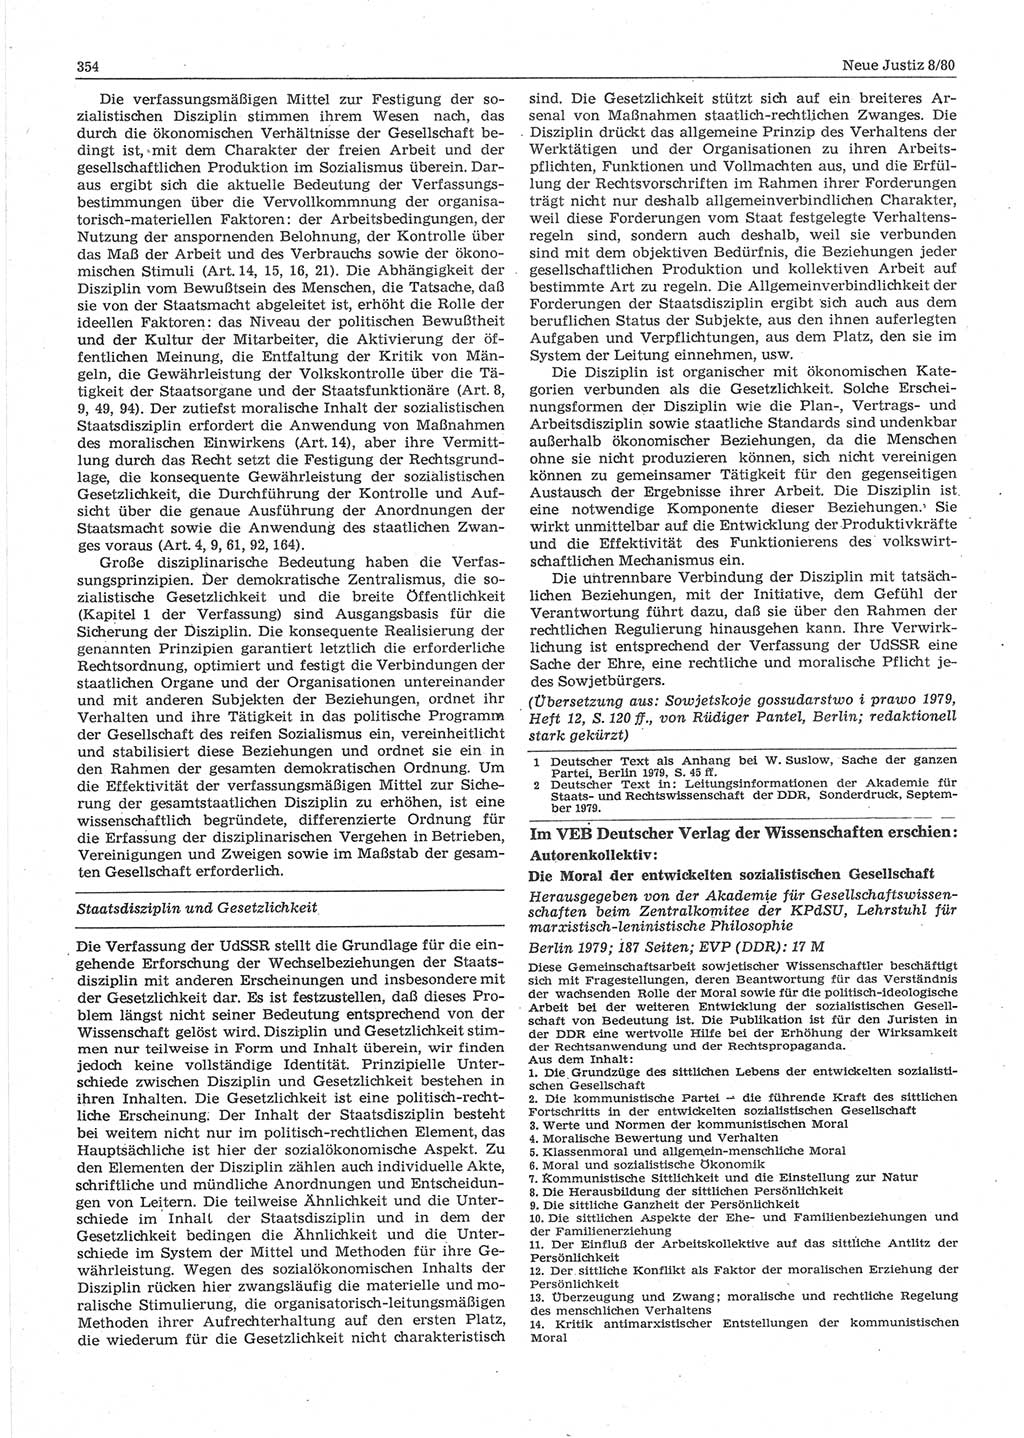 Neue Justiz (NJ), Zeitschrift für sozialistisches Recht und Gesetzlichkeit [Deutsche Demokratische Republik (DDR)], 34. Jahrgang 1980, Seite 354 (NJ DDR 1980, S. 354)